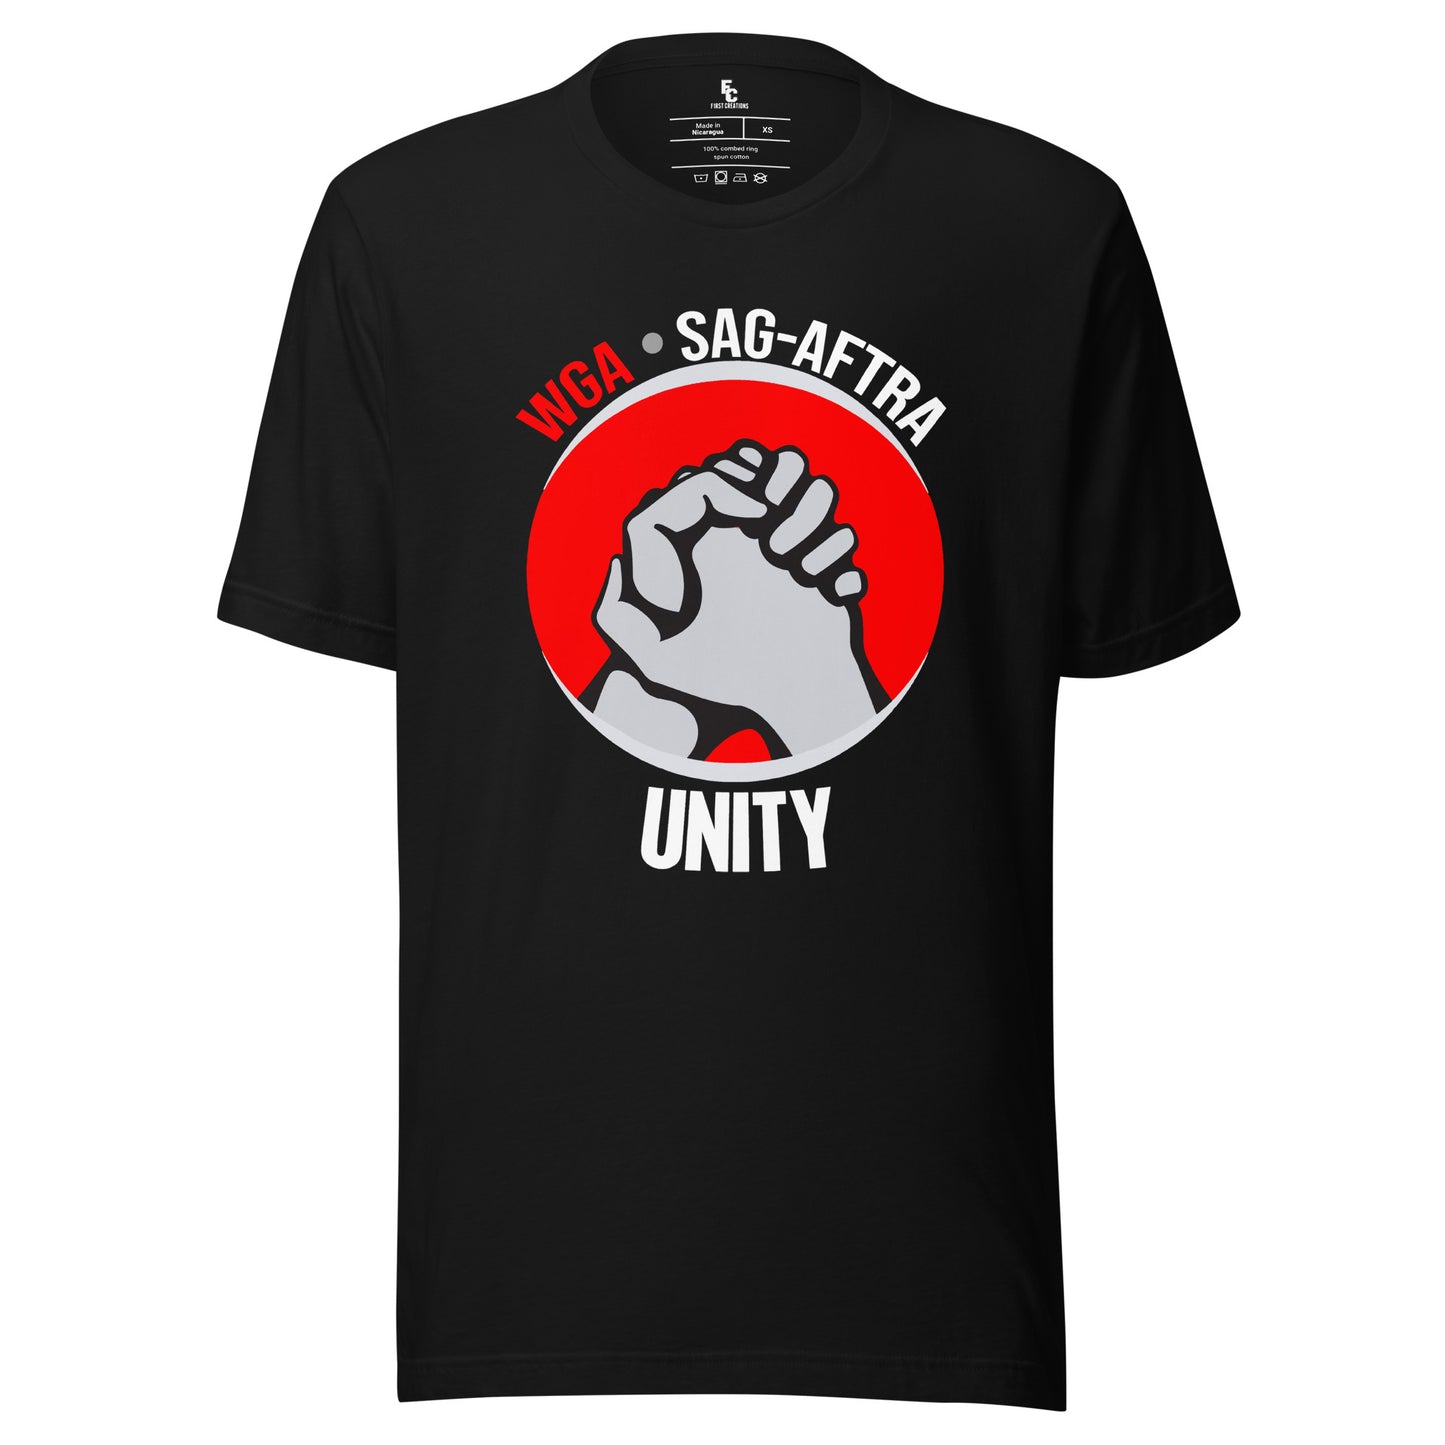 WGA - SAG AFTRA Unity